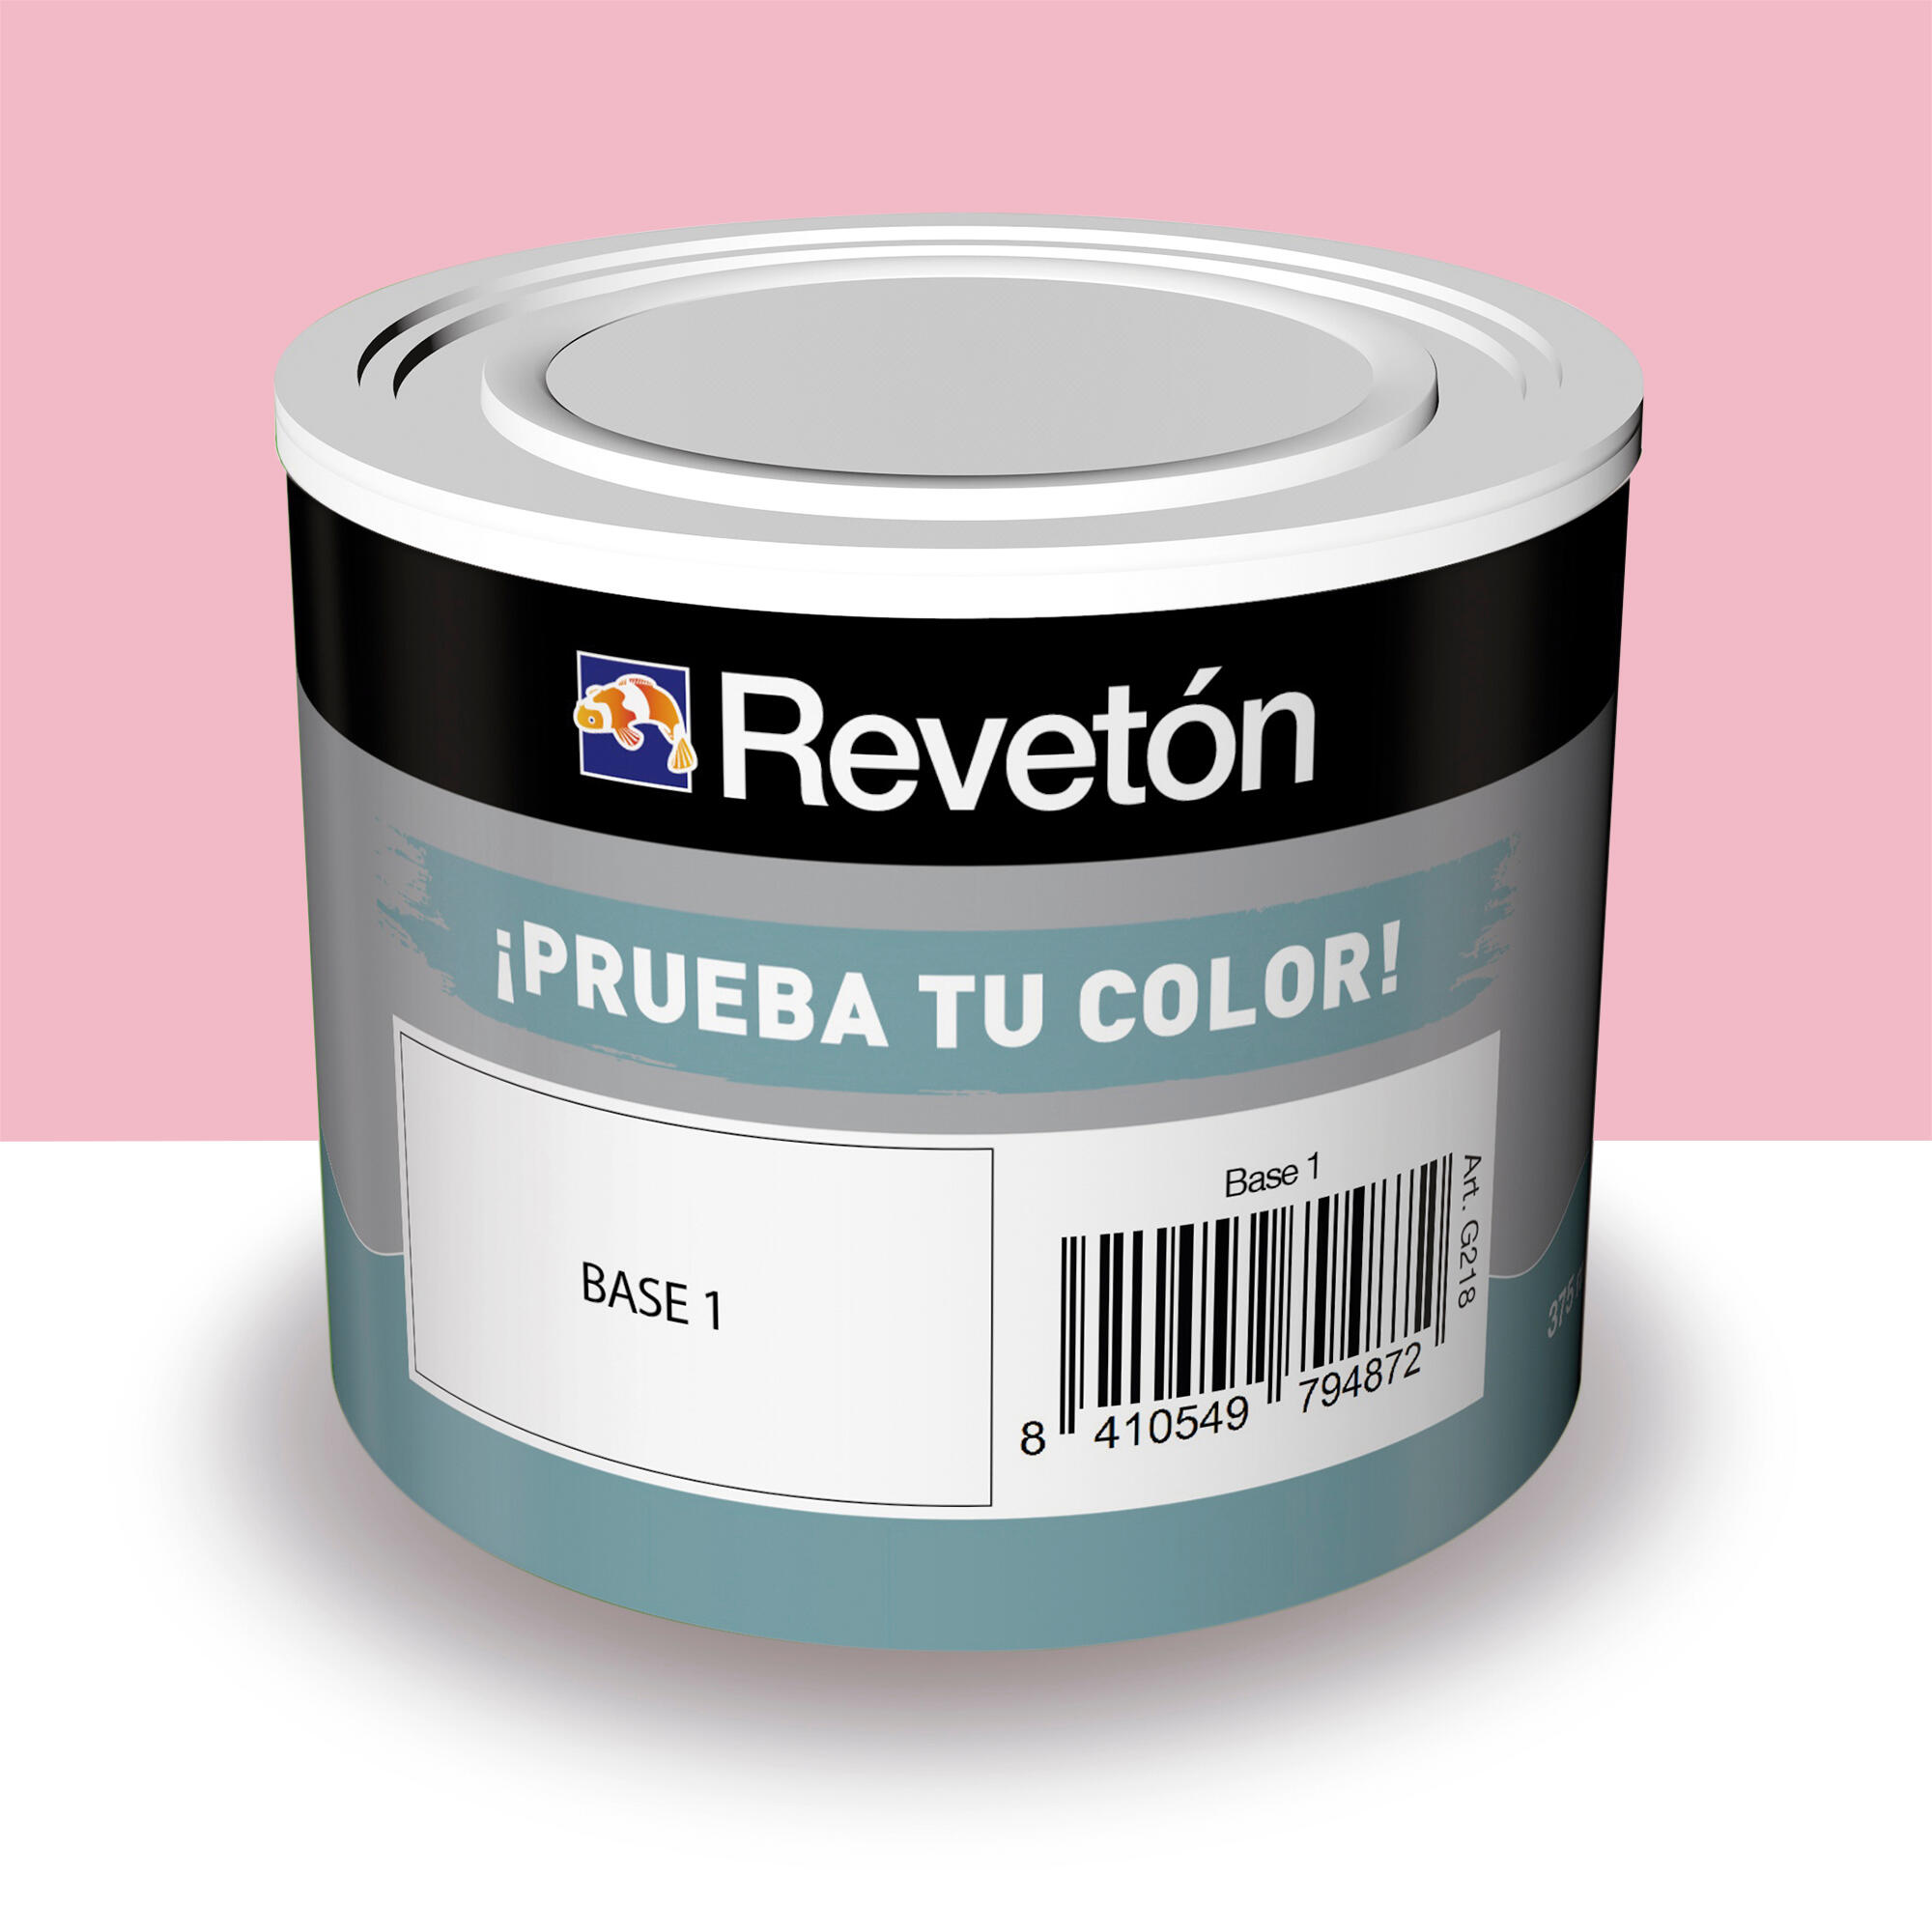 Tester de pintura mate 0.375l 1030-r20b rosa oscuro